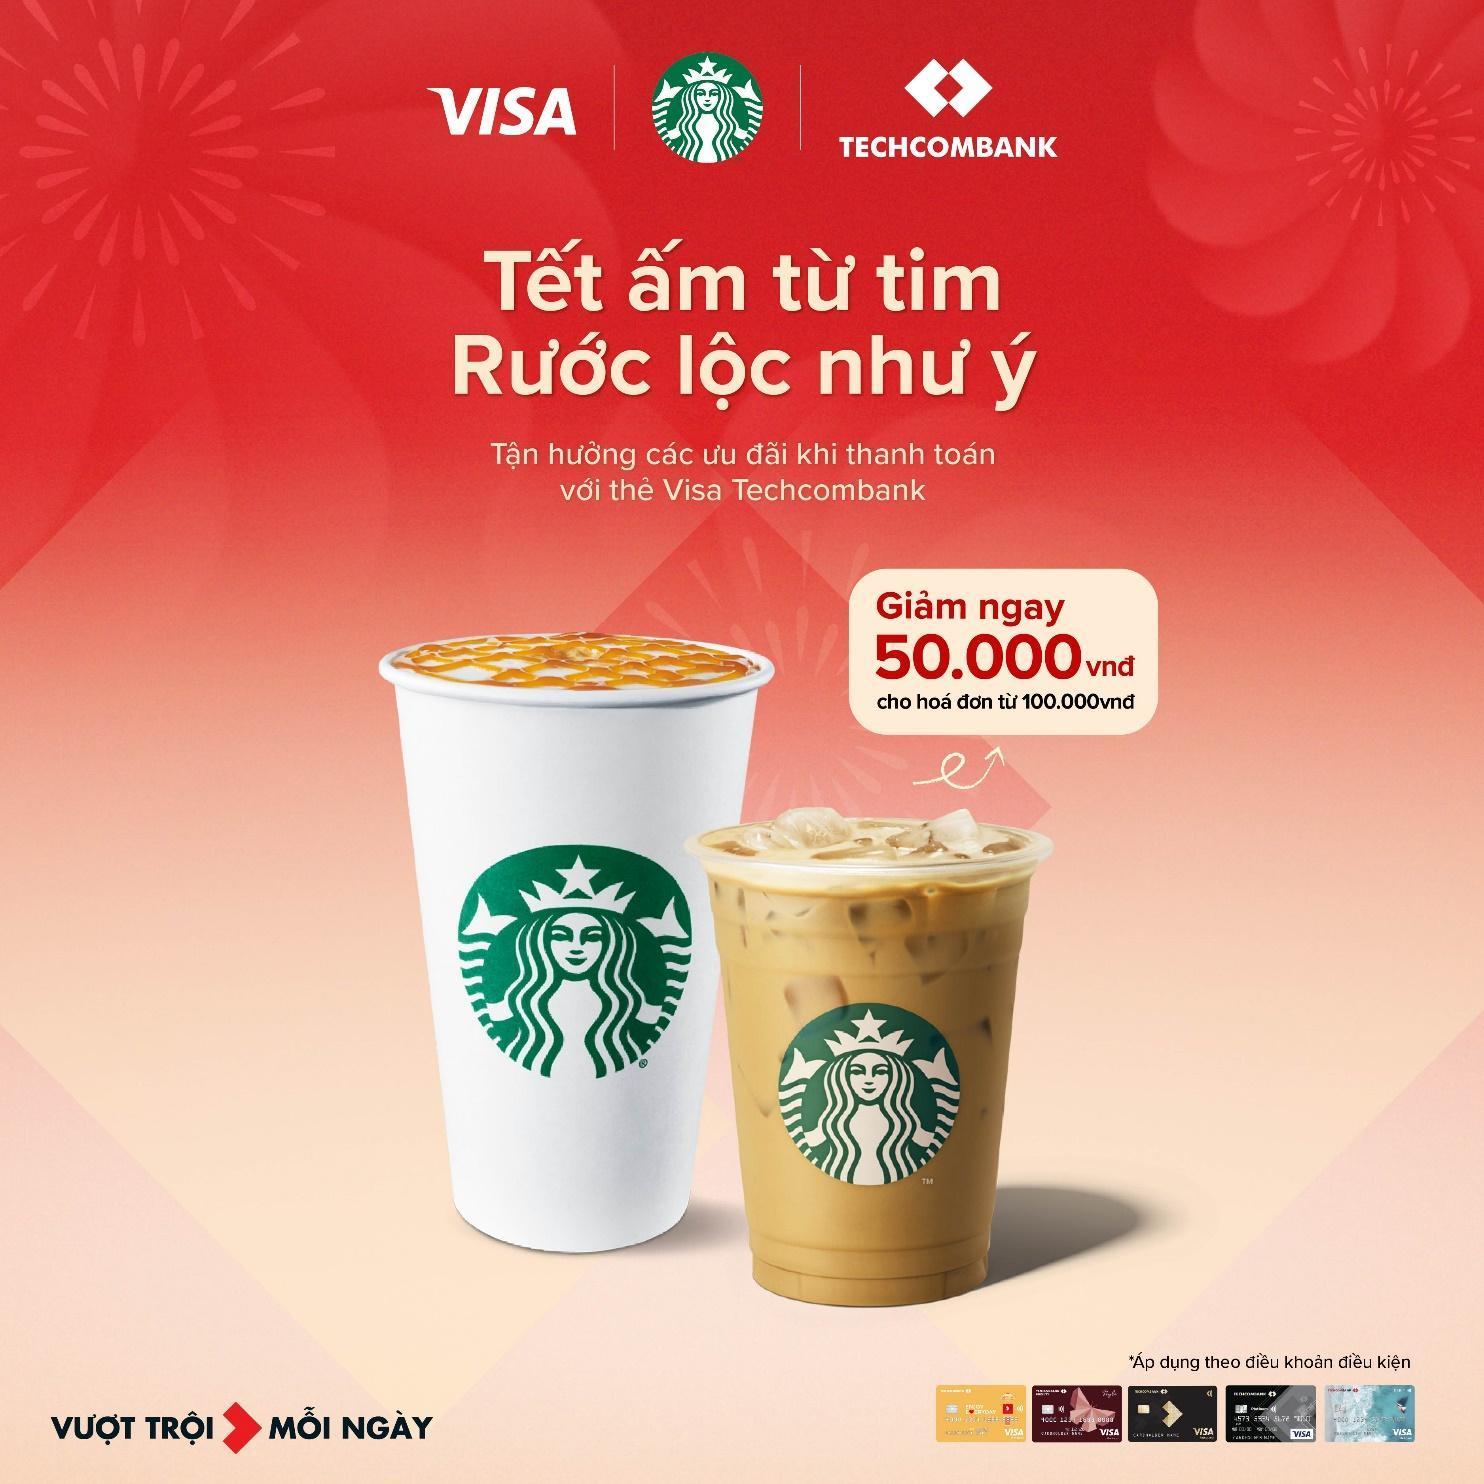 Techcombank hợp tác cùng Starbucks Vietnam đem “Tết ấm từ tim - Rước lộc như ý” tới khách hàng - Ảnh 2.